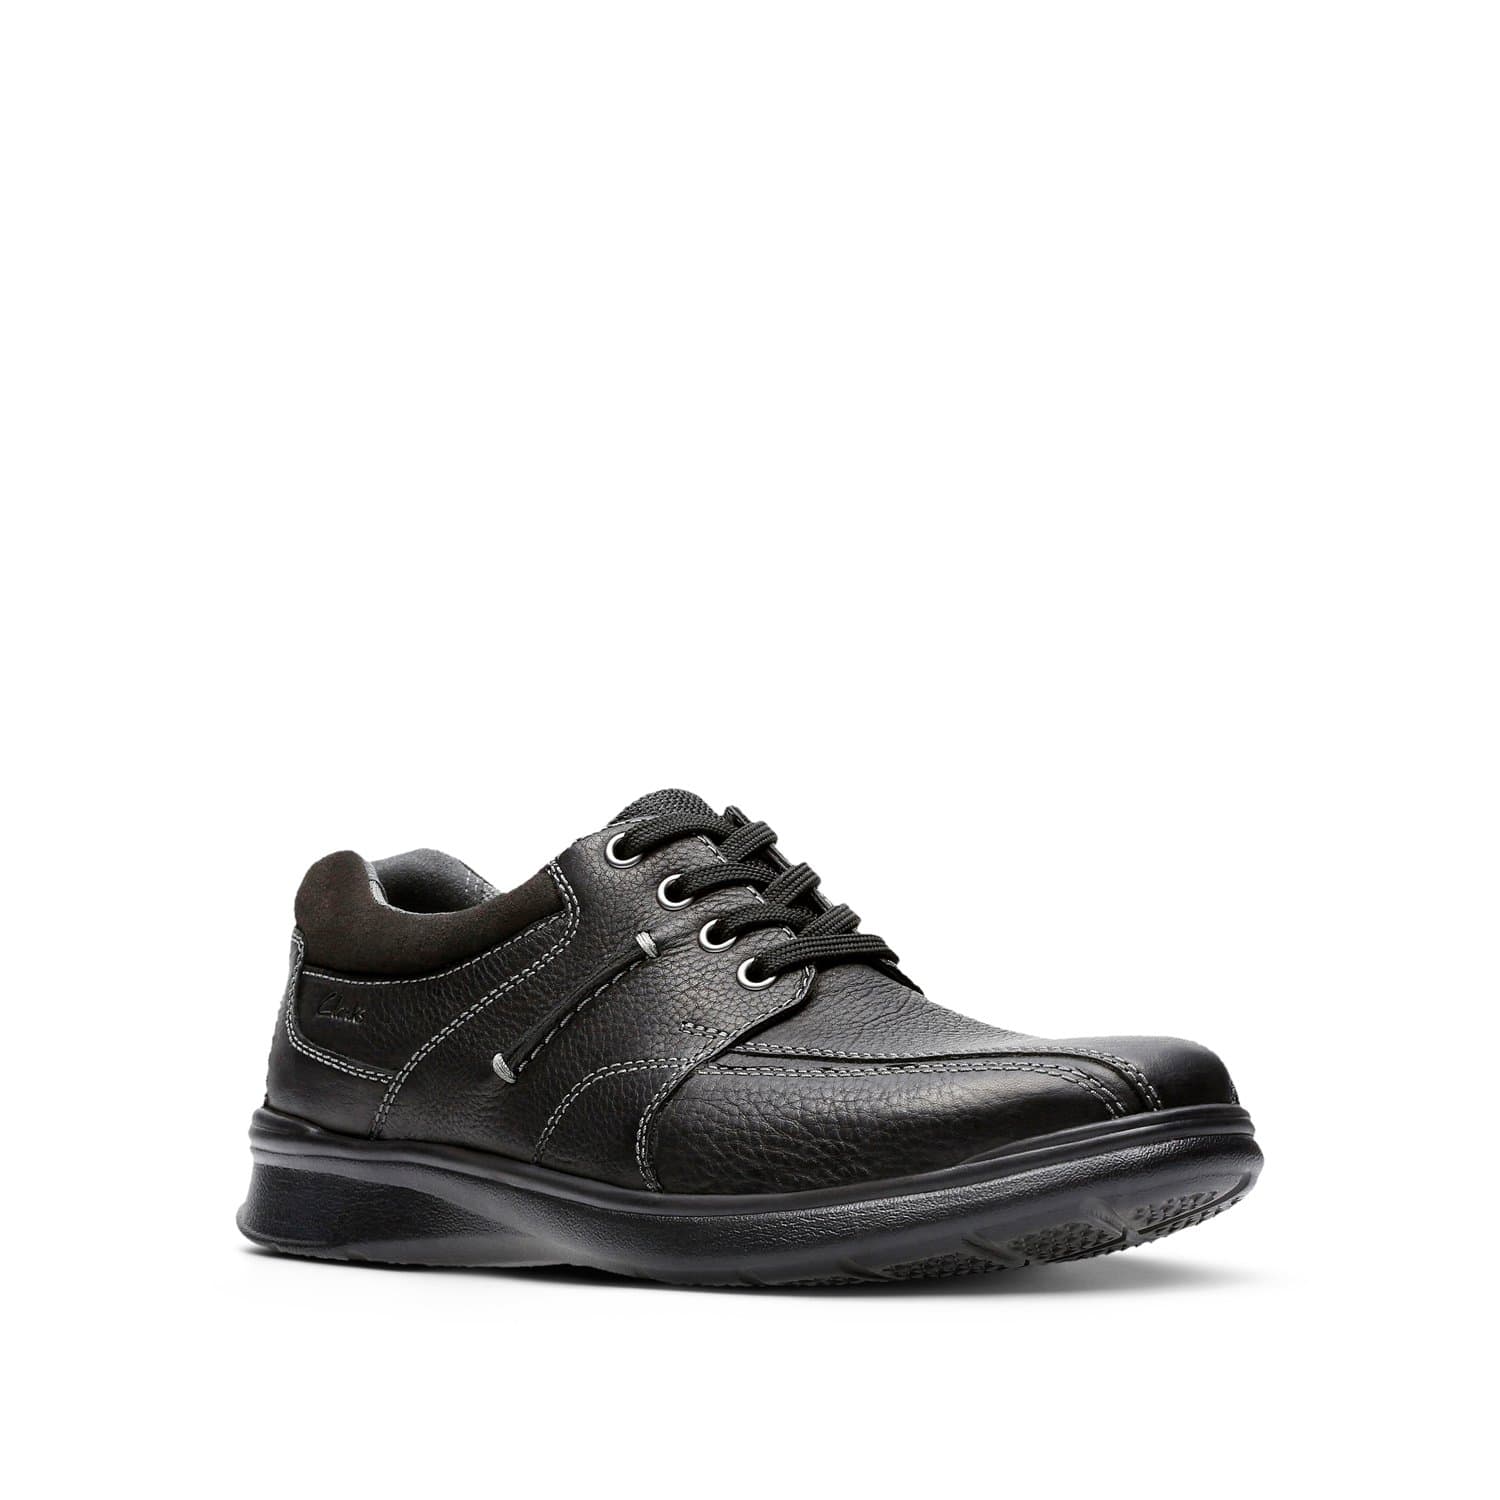 كلاركس - كوتريل - ووك - أحذية رجالية - أسود - زيتي - جلد - 26119725